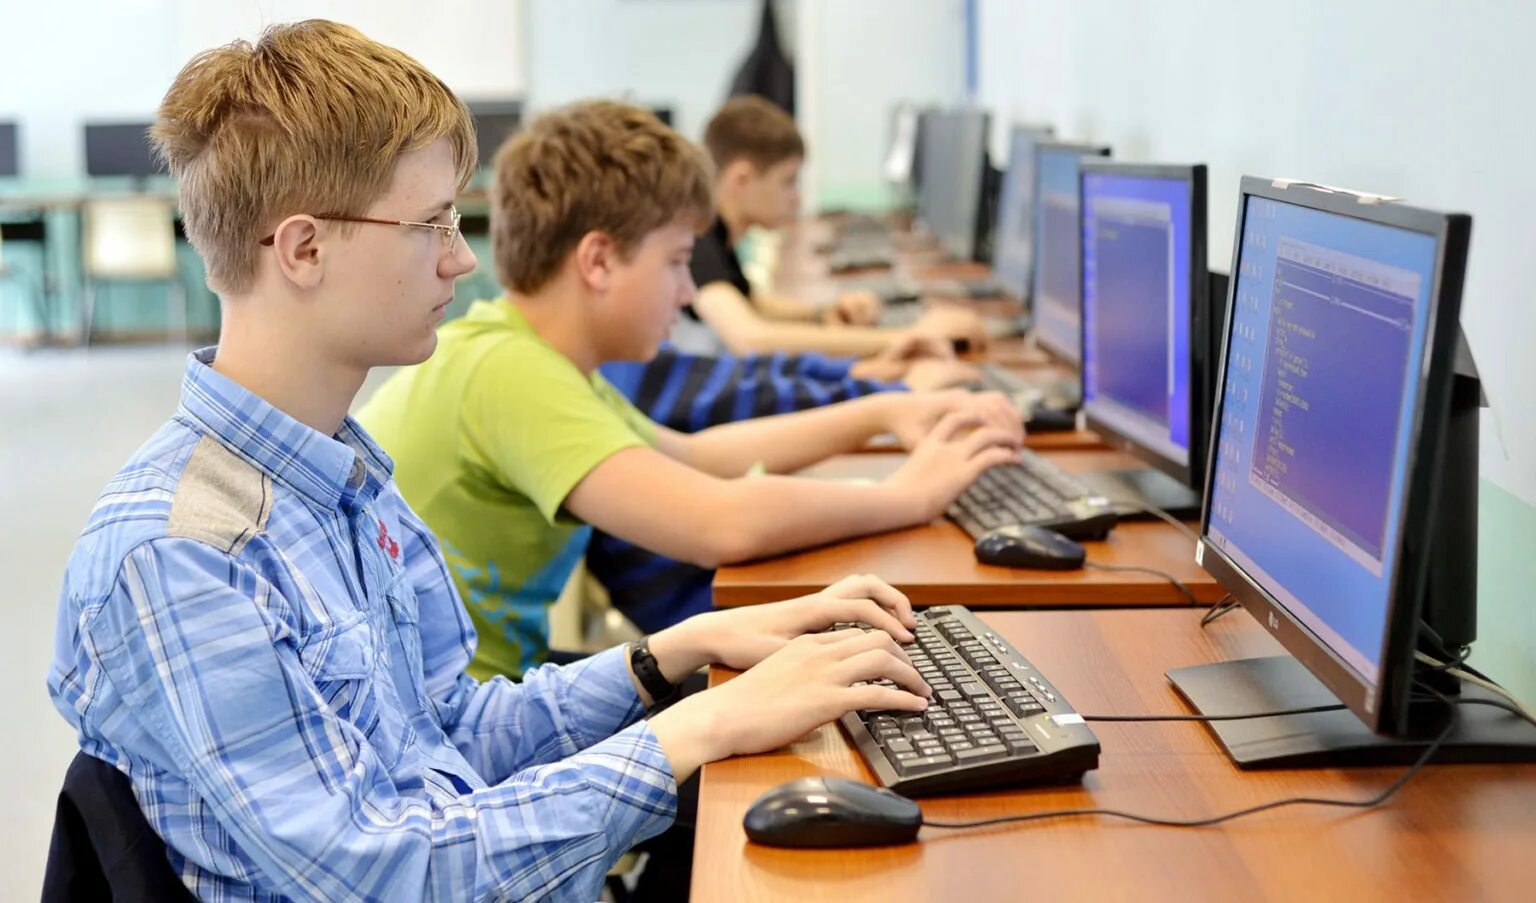 На уроке информатики ученики. Подросток за компьютером. Школьники в компьютерном классе. Компьютерный класс с учениками. Студенты в компьютерном классе.